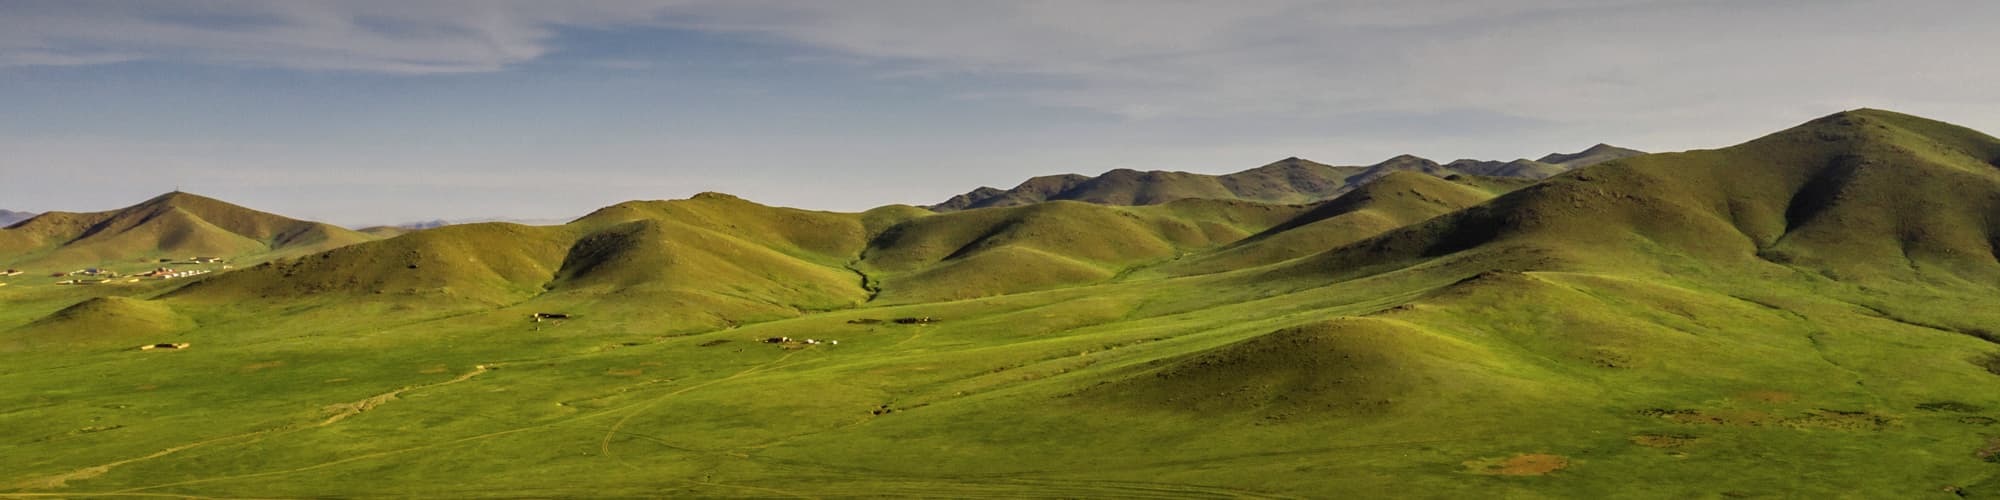 Trek Mongolie © Travel Stock / Adobe Stock